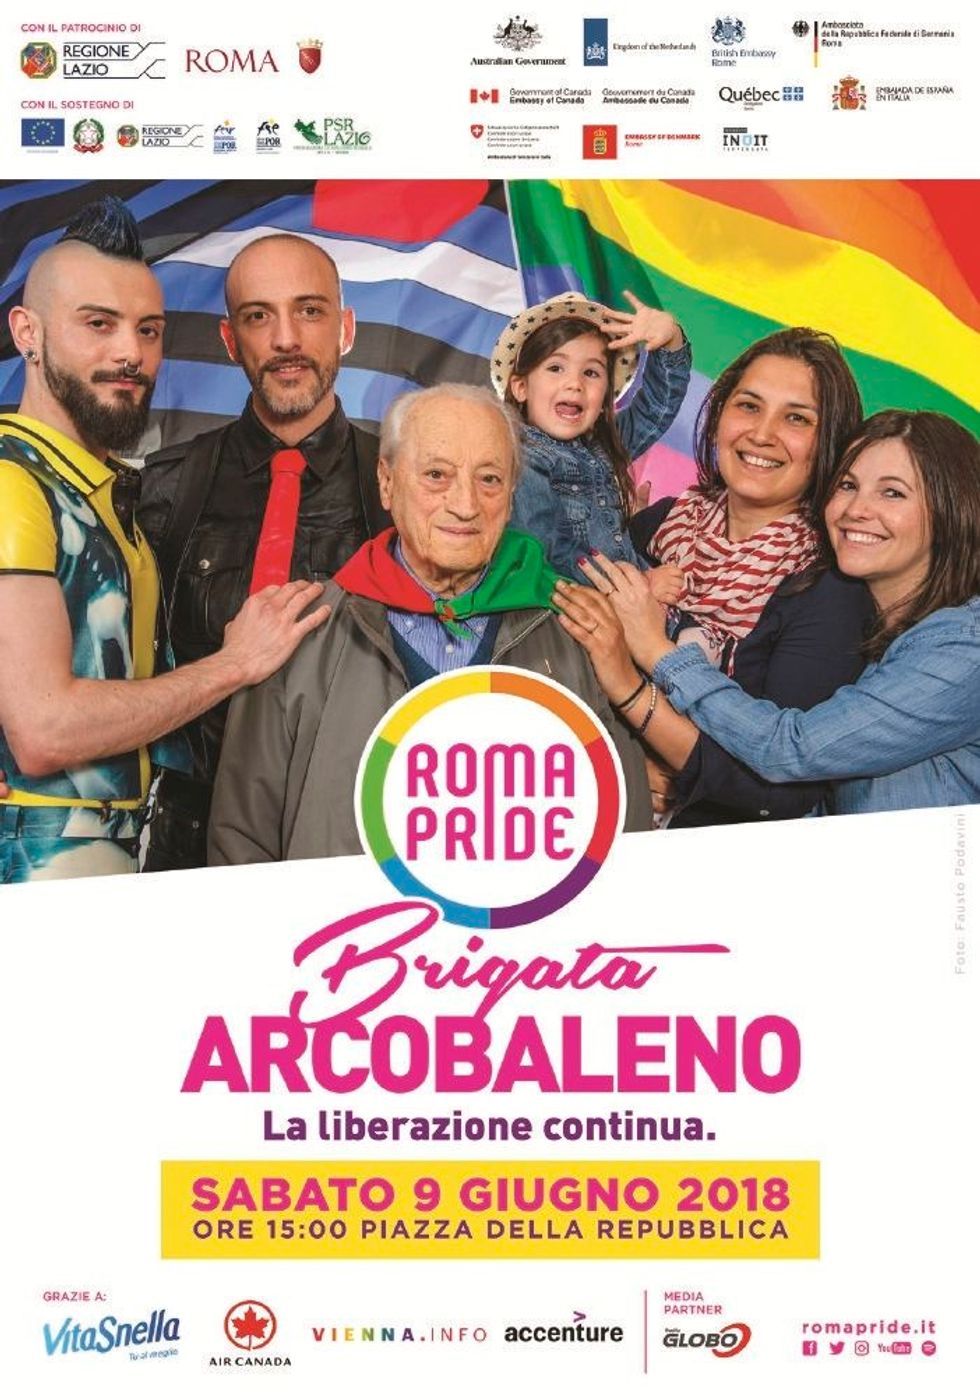 L’ultima pagliacciata dei partigiani:«brigata arcobaleno» al Gay pride